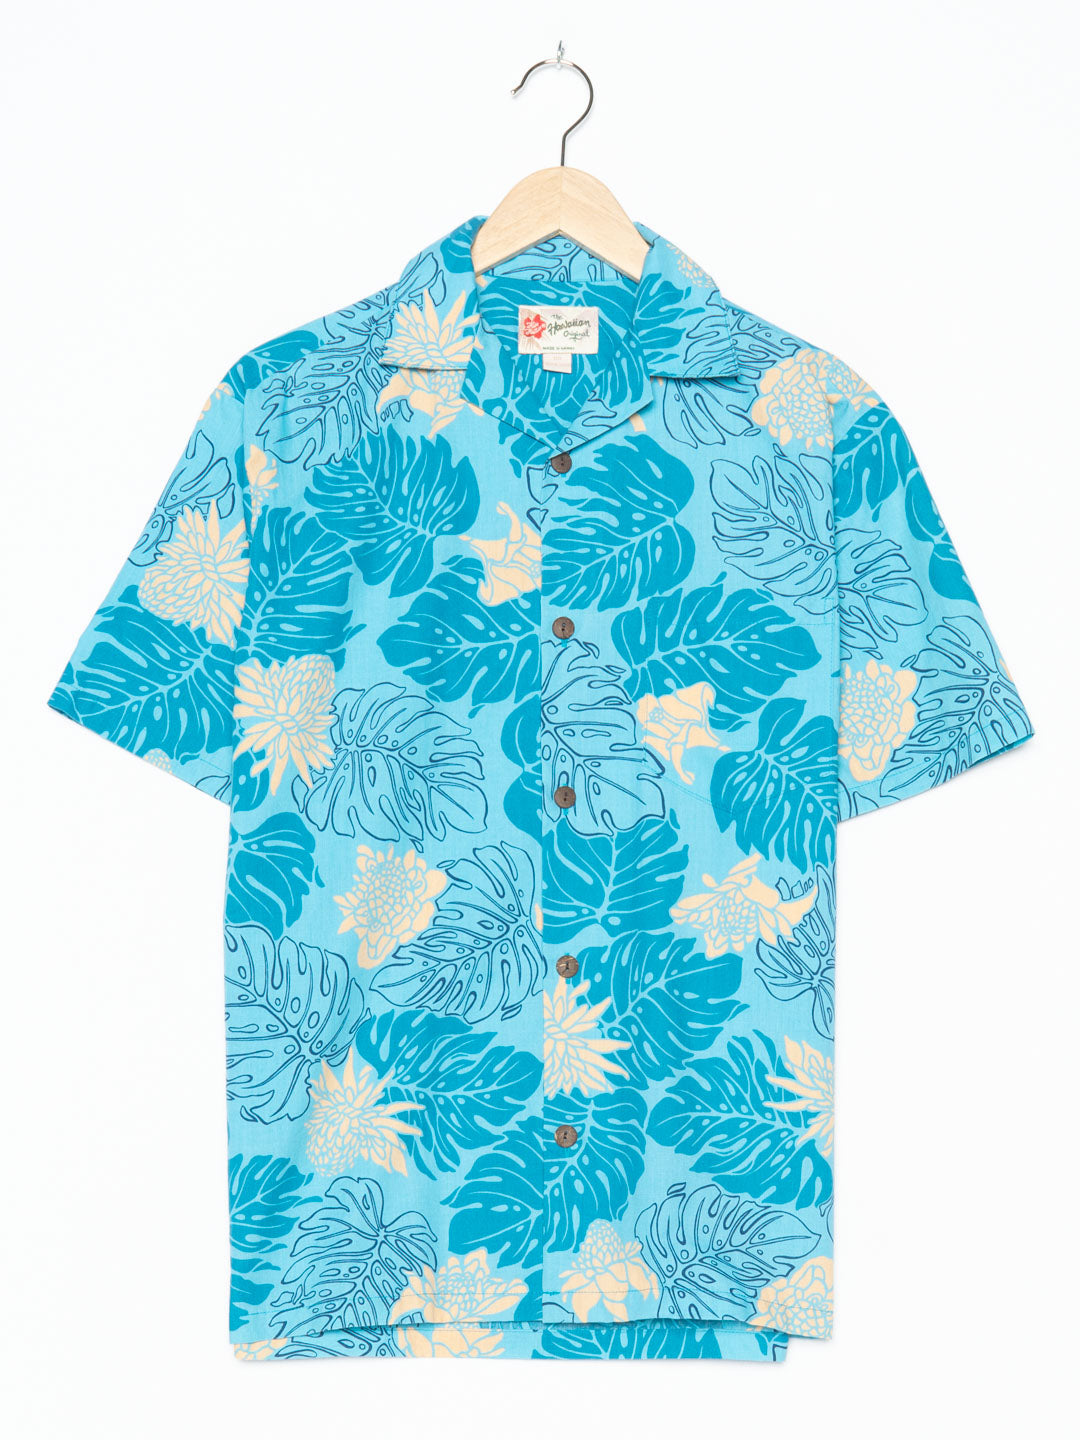 The Hawaiian Original Blue Hawaiian Shirt